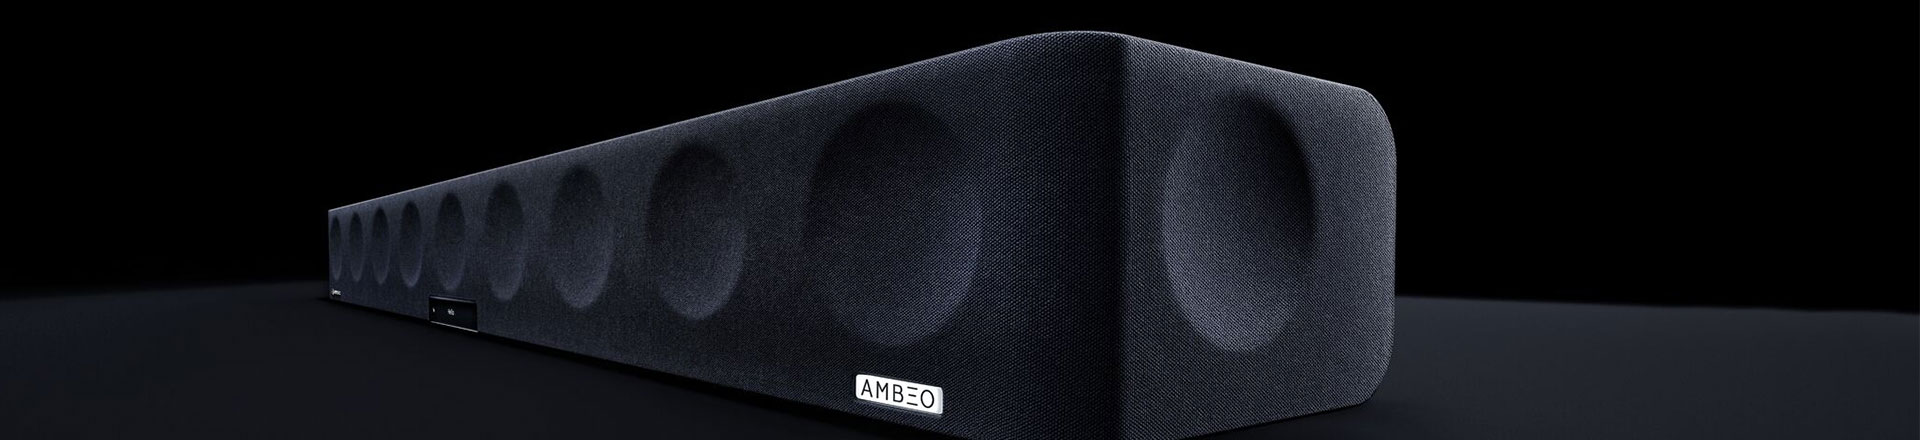 Sennheiser poszerza portfolio soundbarów AMBEO